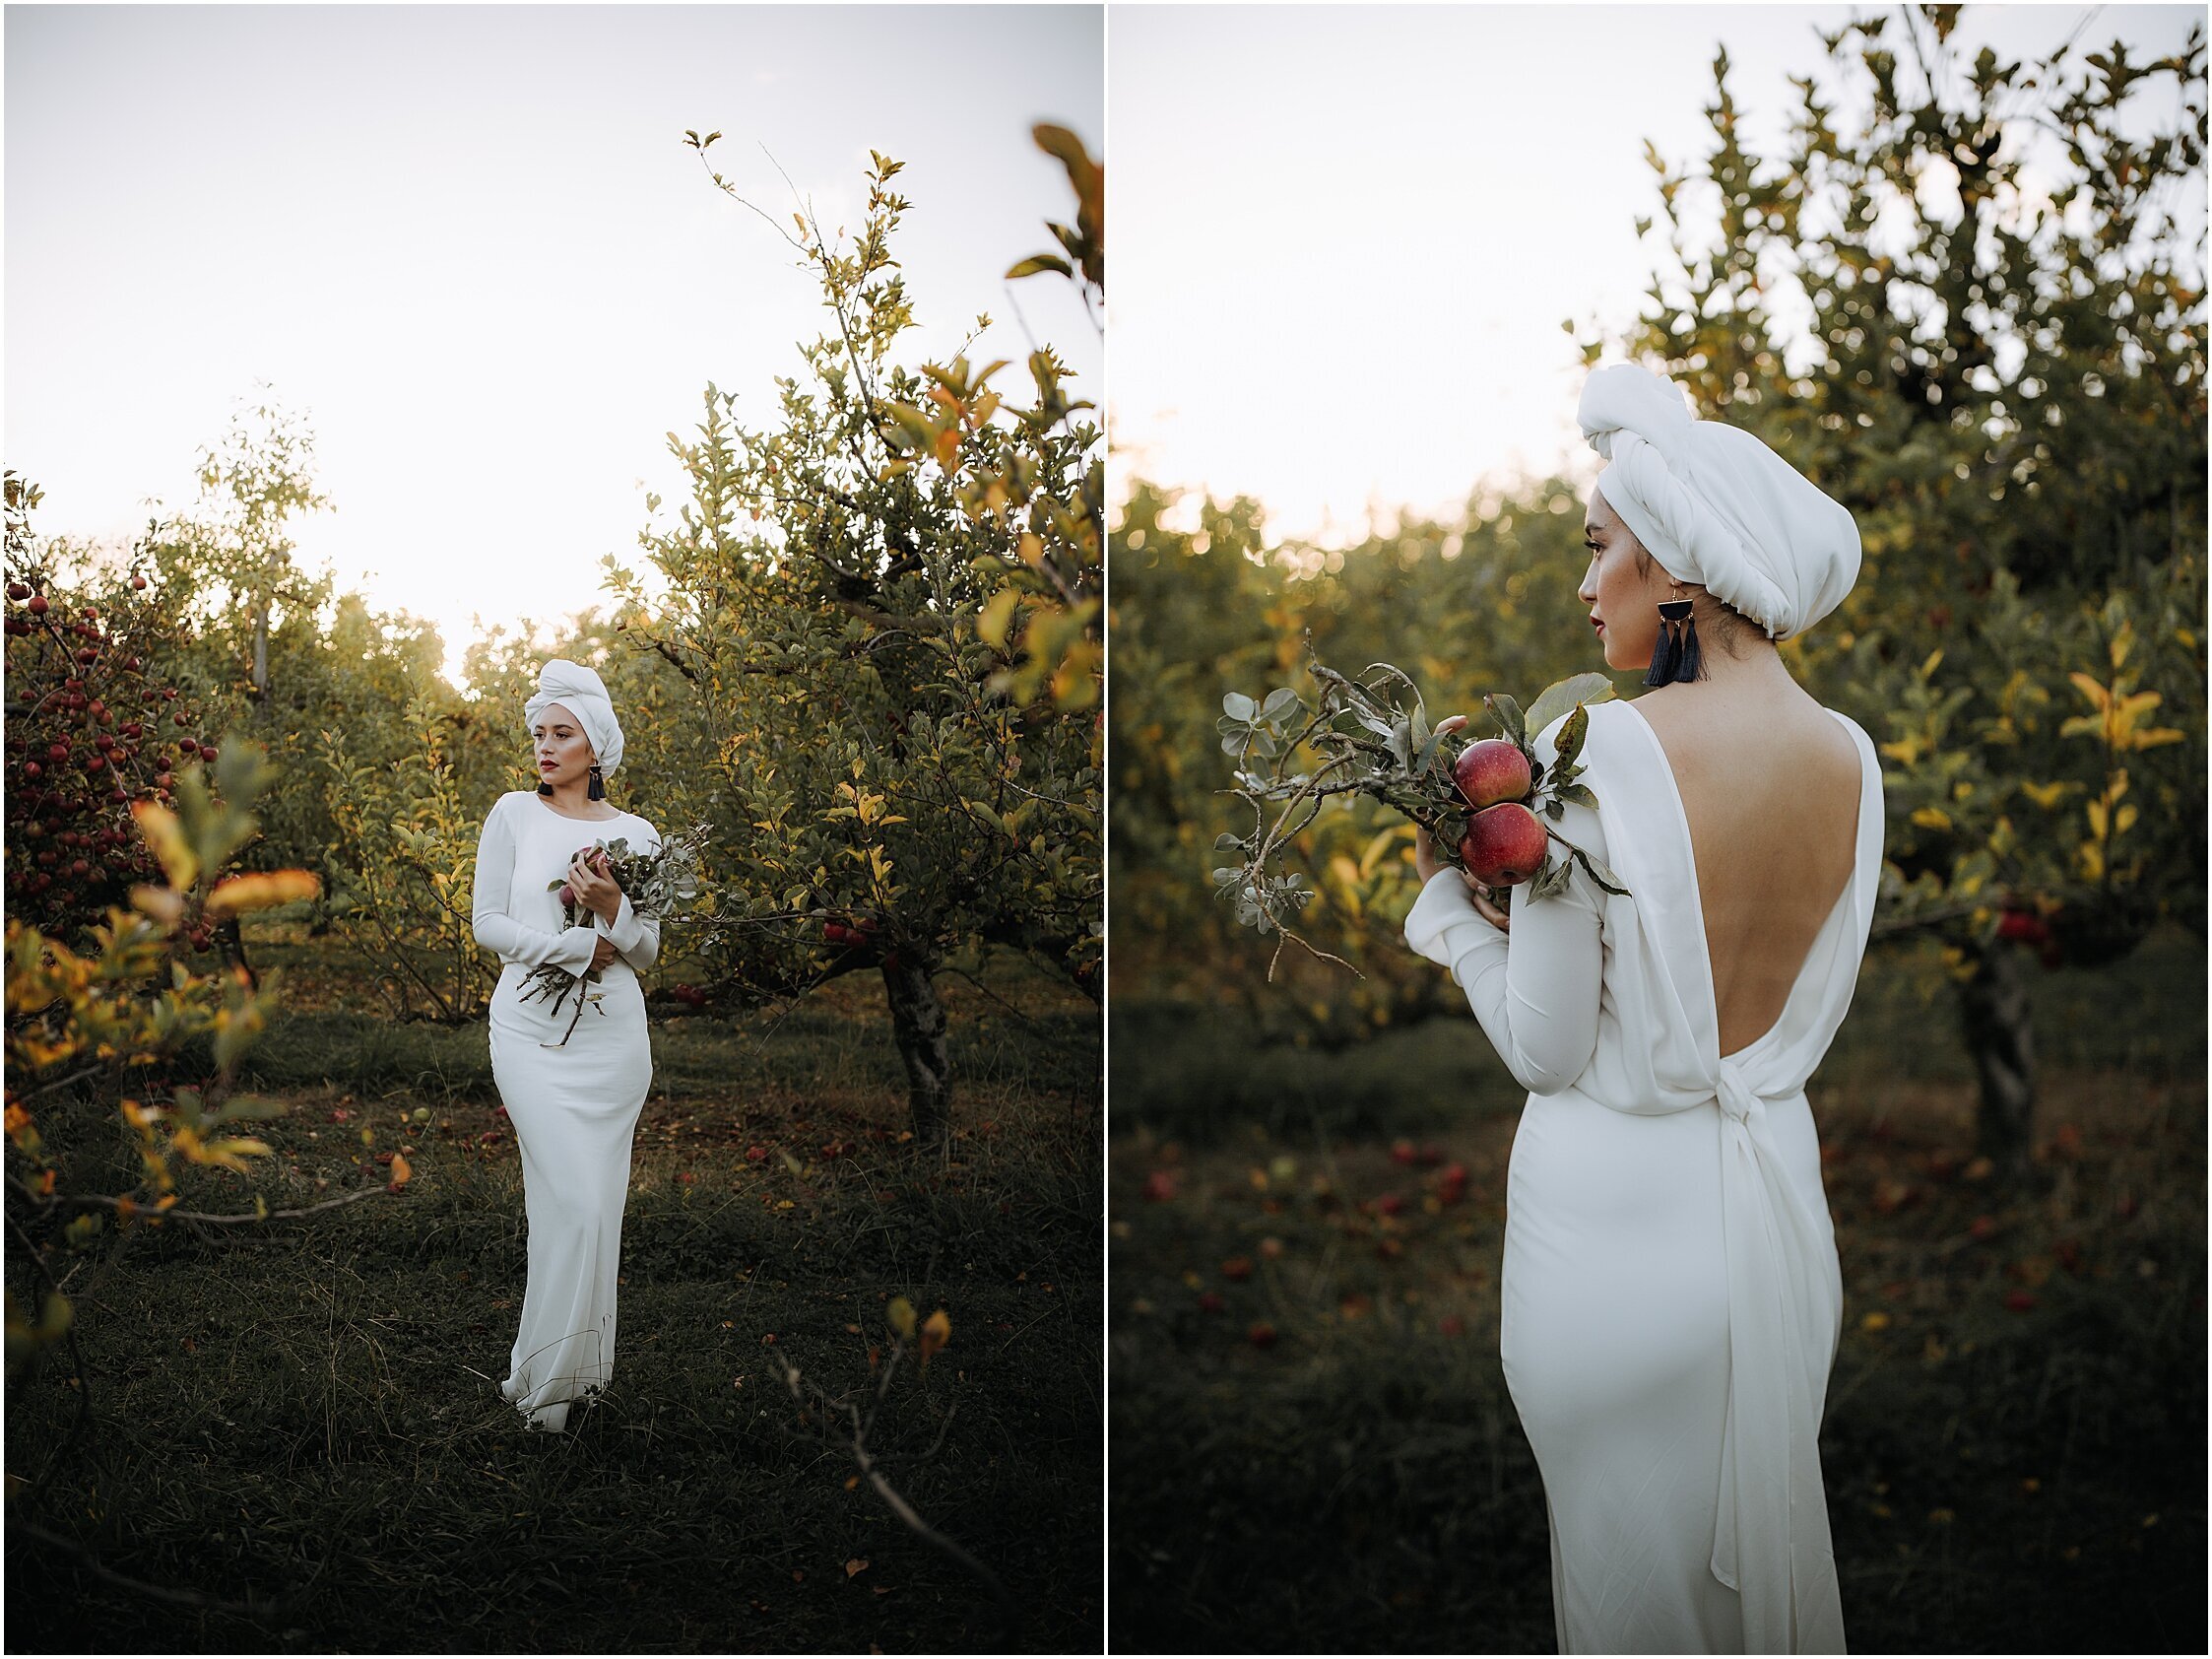 Zanda+Auckland+wedding+photographer+unique+portrait+photoshoot+ideas+autumn+winter+Windmill+apple+orchard+Coatesville+New+Zealand_17.jpeg